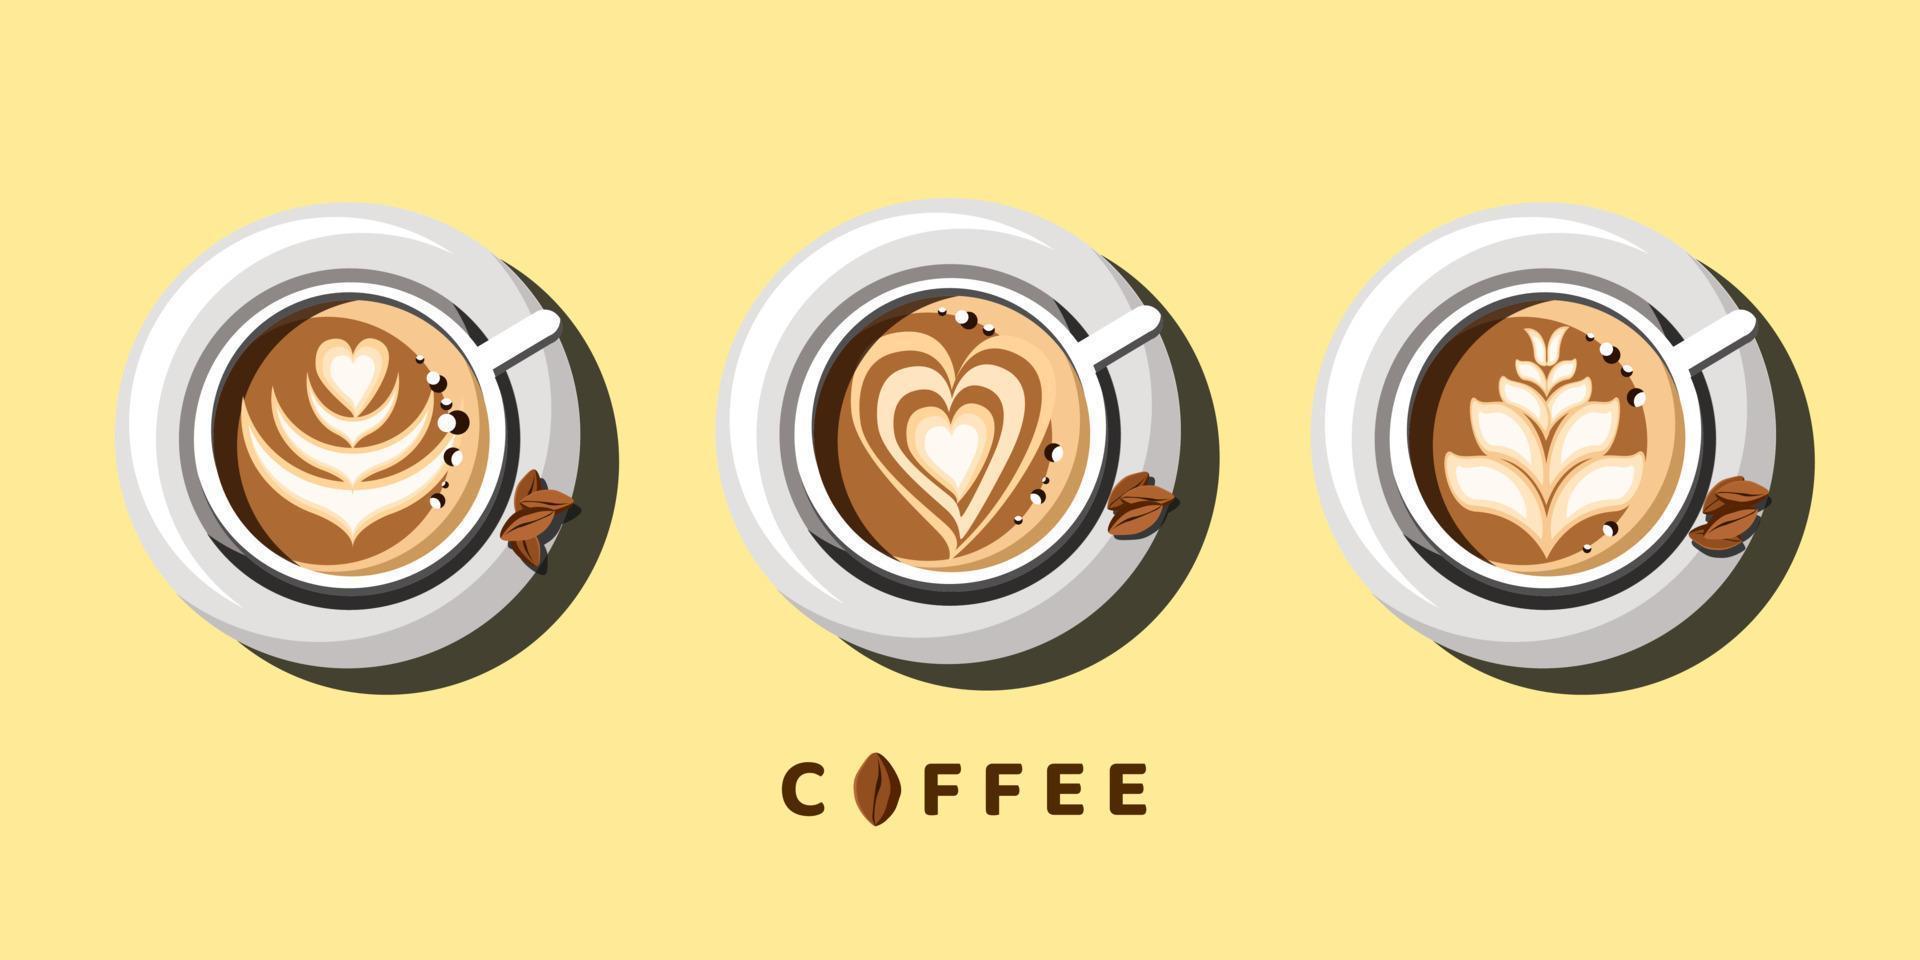 koffie latte kunst vector illustratie collectie